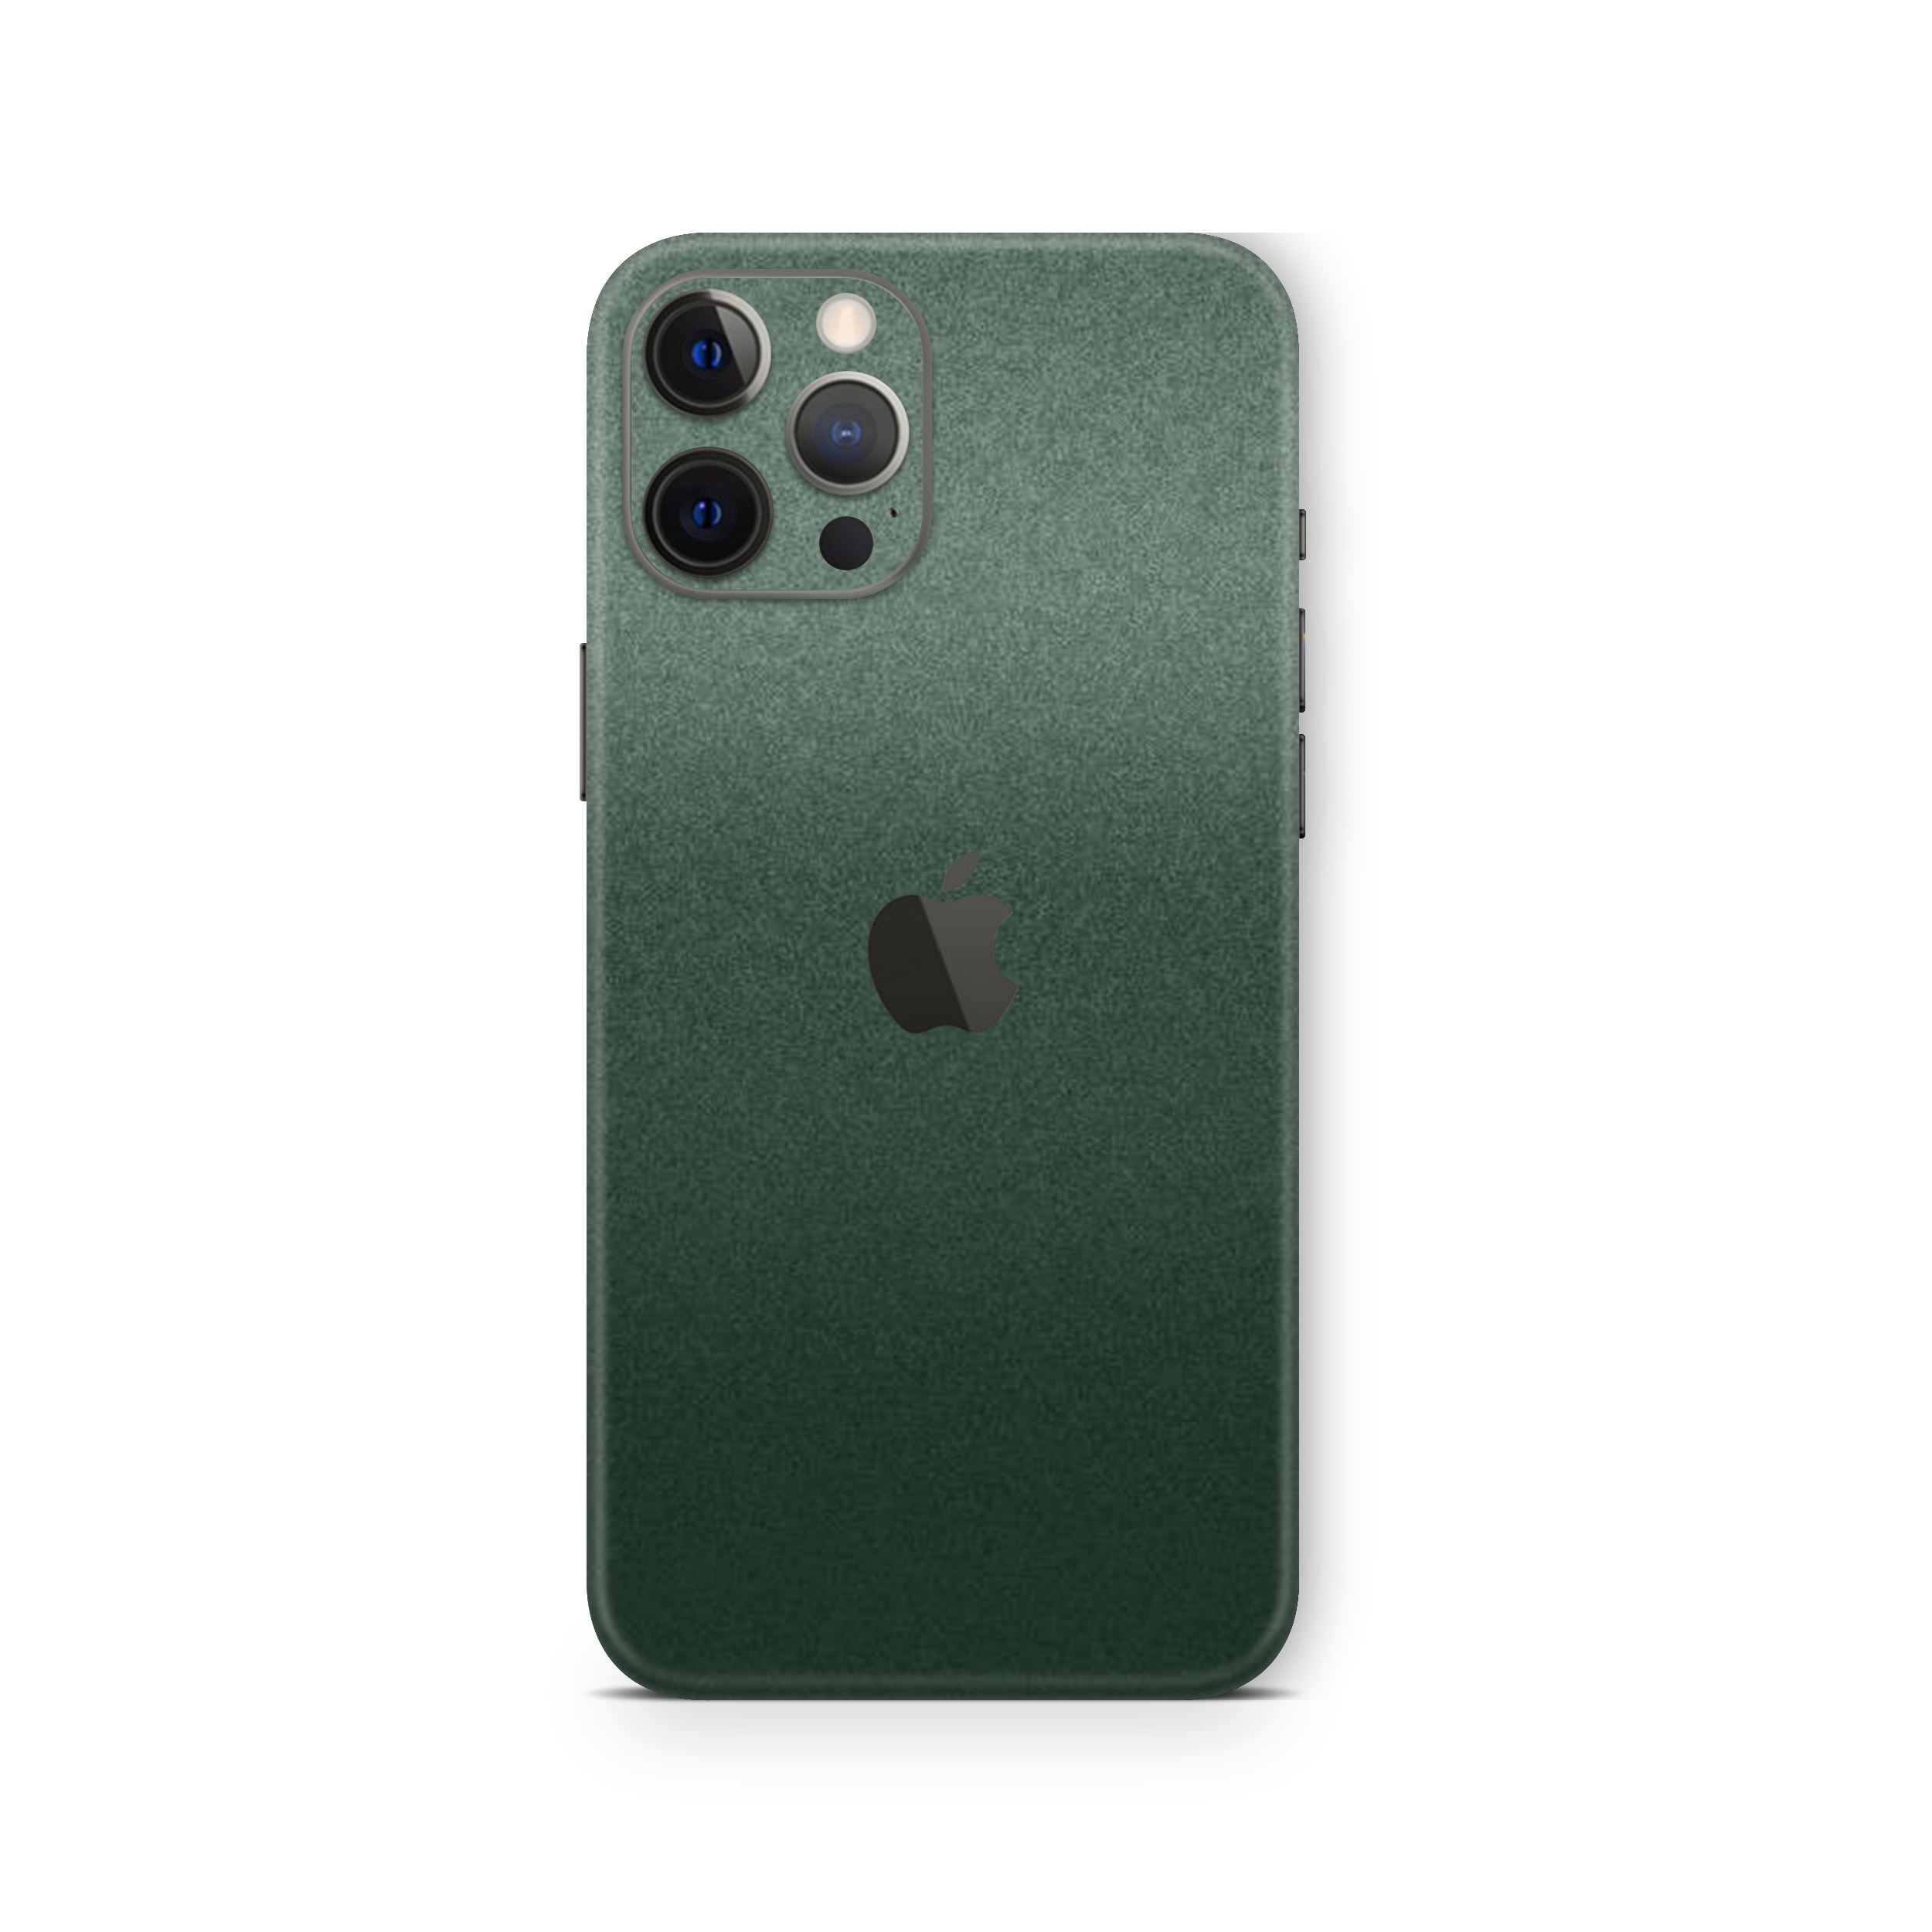 Pine Green Metallic Skin For iPhone 12 Pro Max